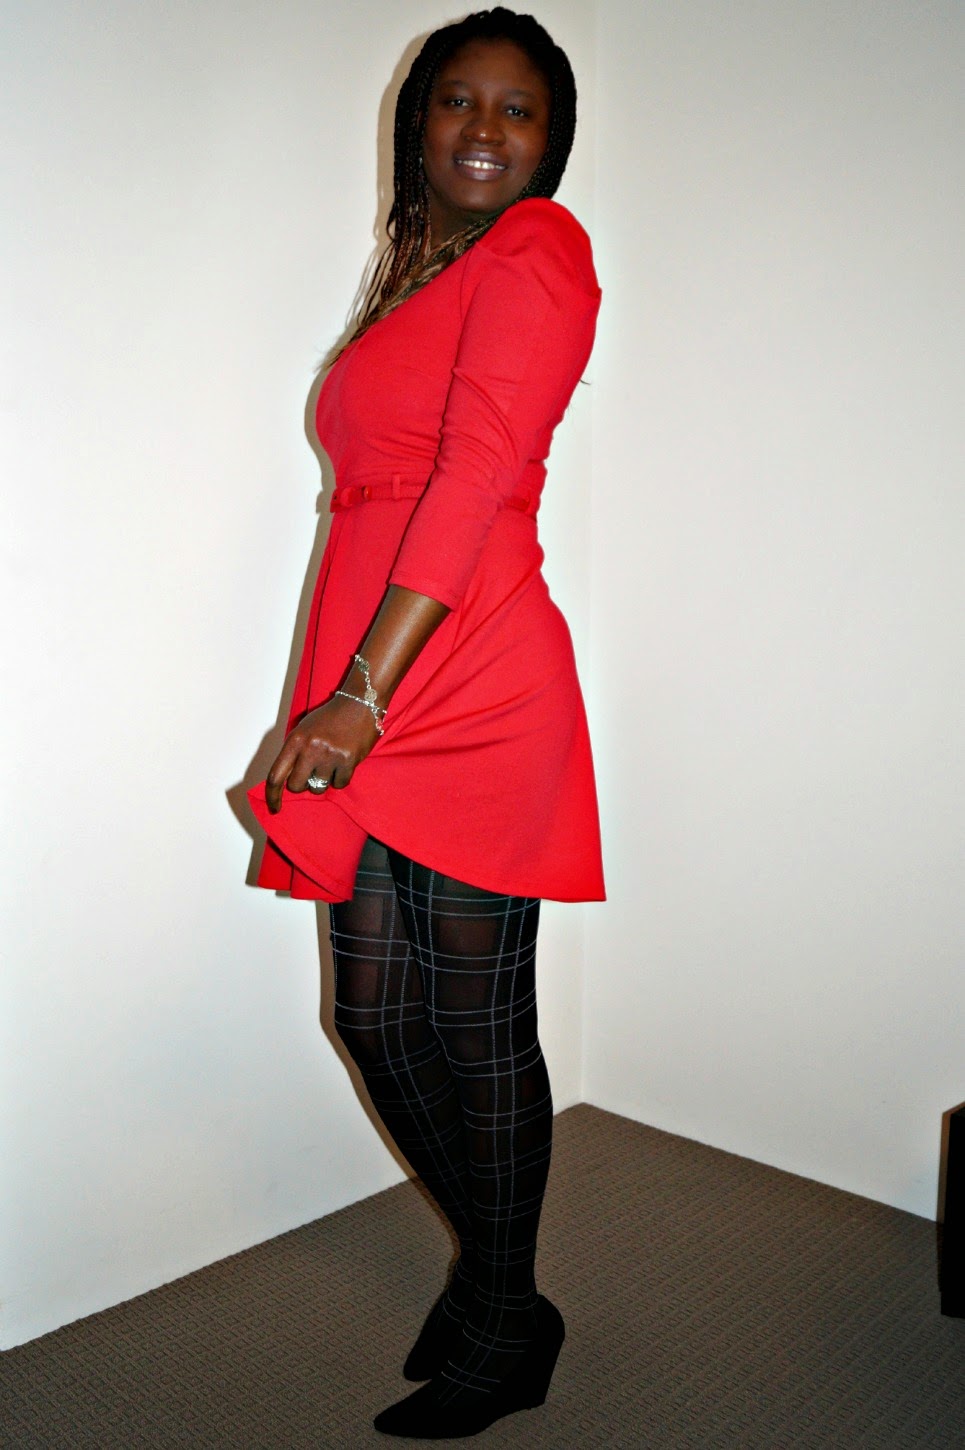 Red Mini Dress with Tartan Tights | The ...